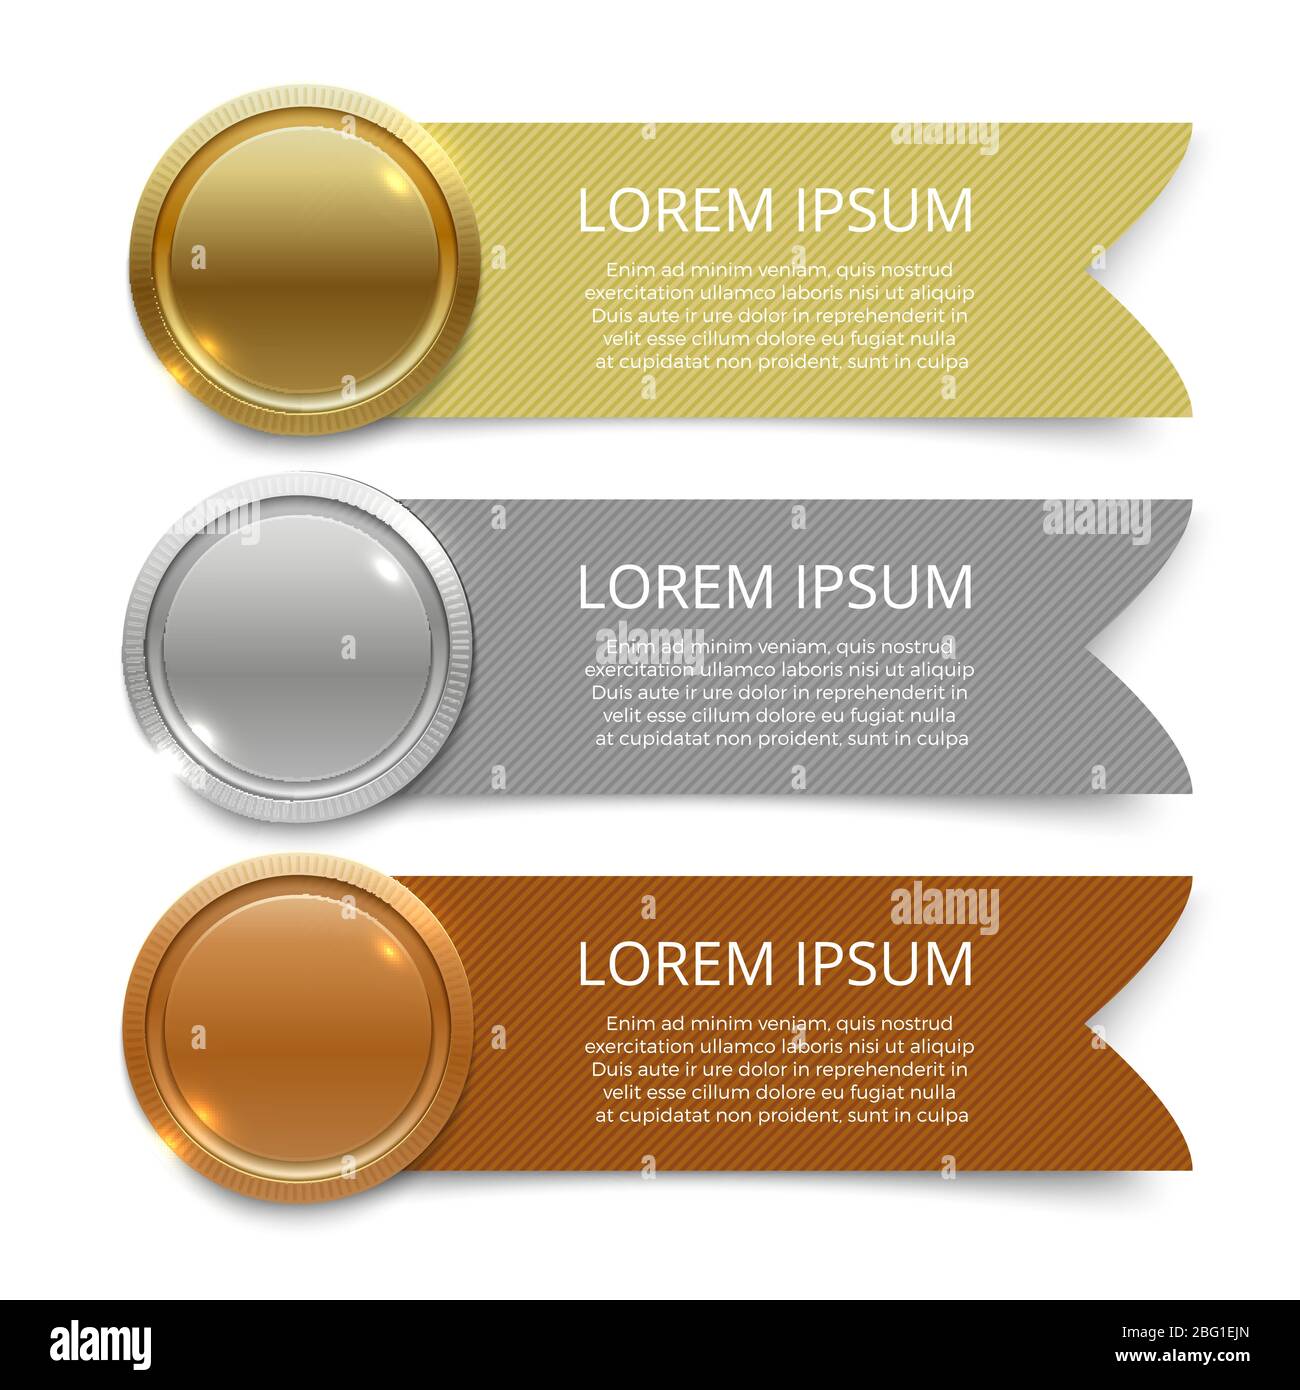 Gold-, Silber- und Bronzemedaillen mit Bannern für Textgestaltung. Vektorgrafik Stock Vektor